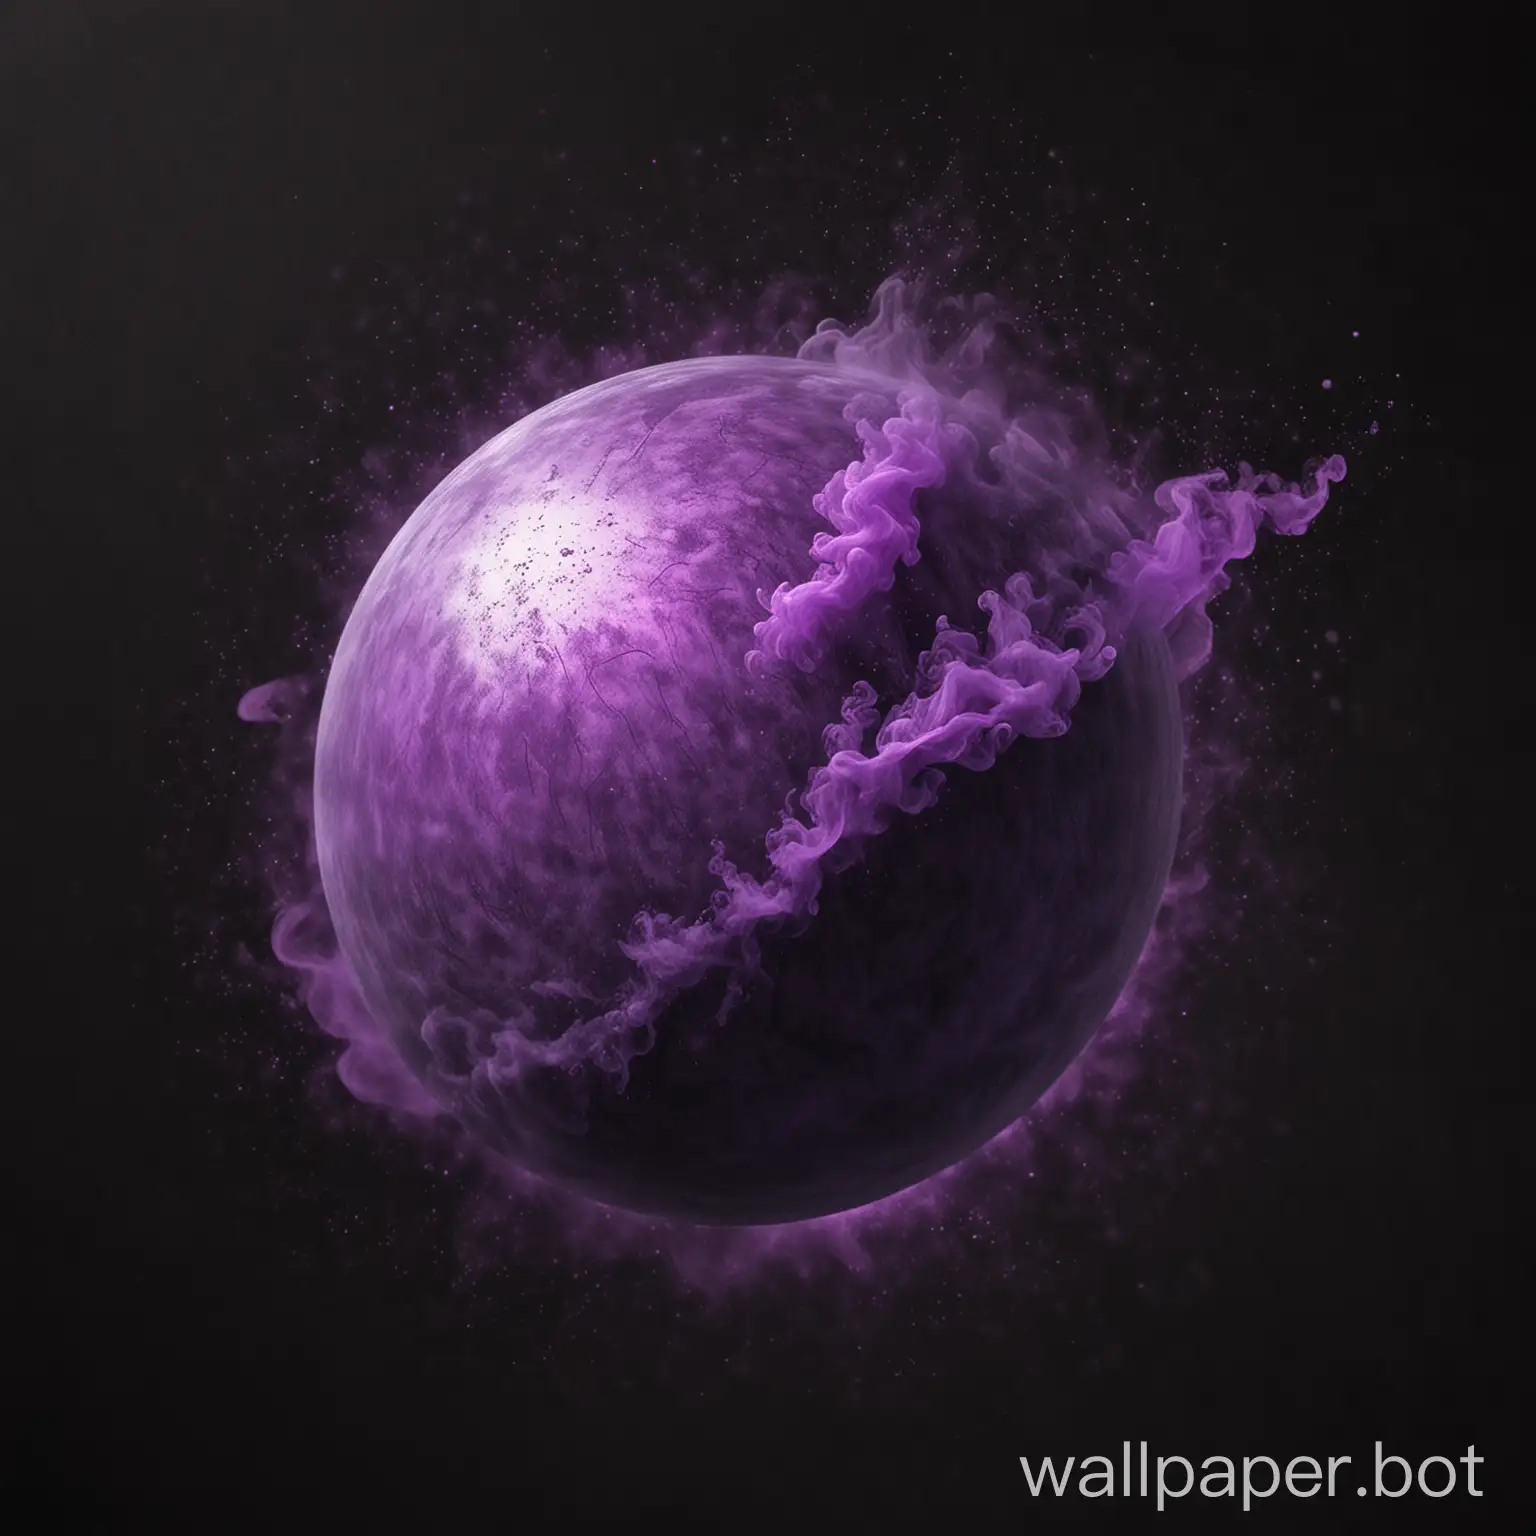 нарисуй шар, который заполнен фиолетовым туманом на черном фоне
